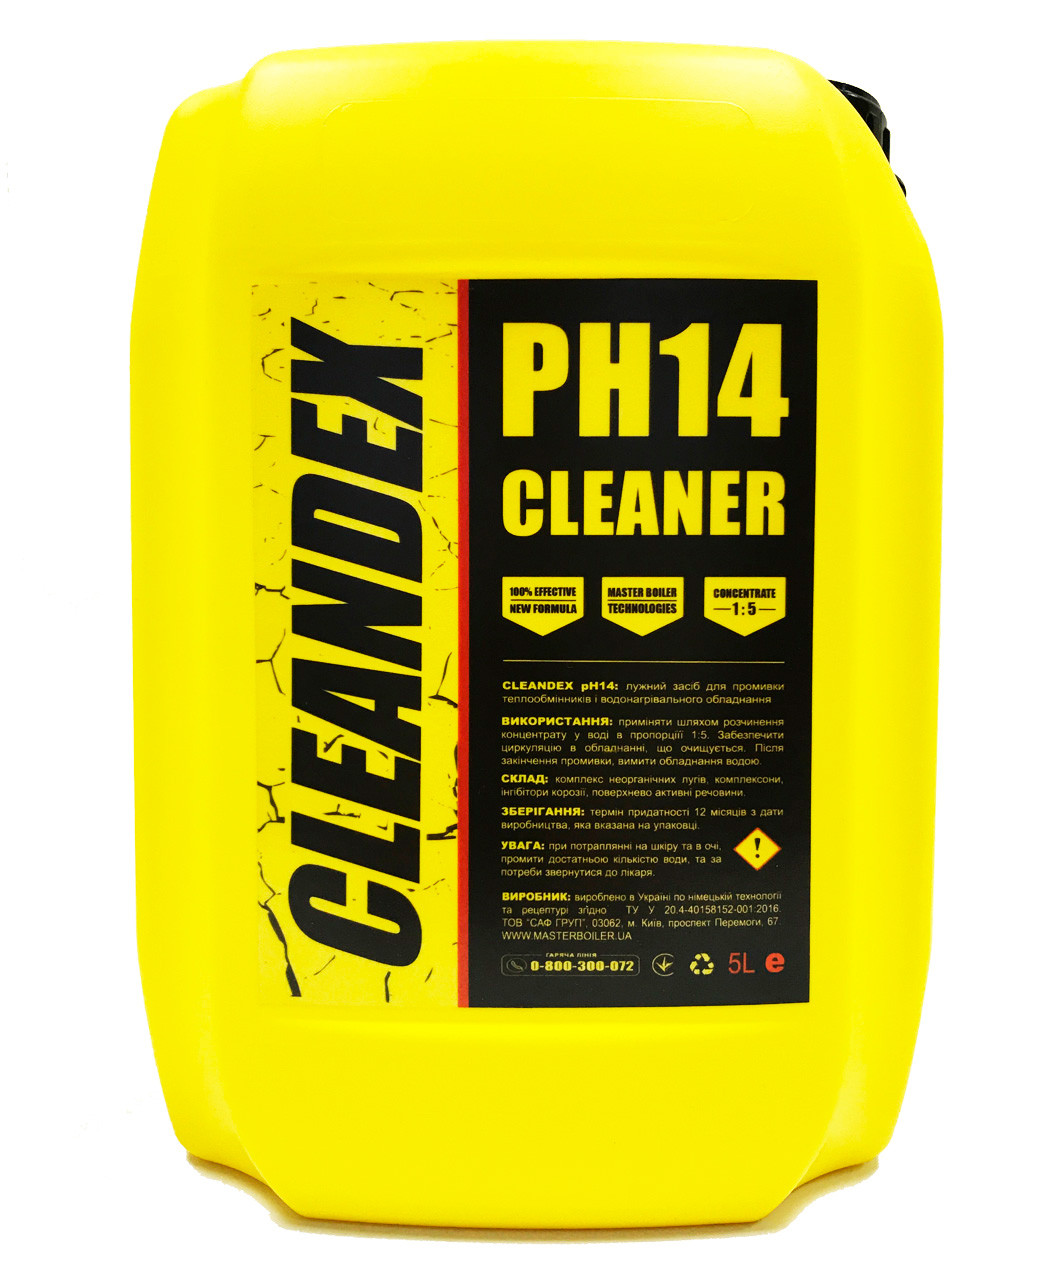 Лужний засіб для промивки теплообмінників і водогрійного обладнання CLEANDEX pH14, 5 л